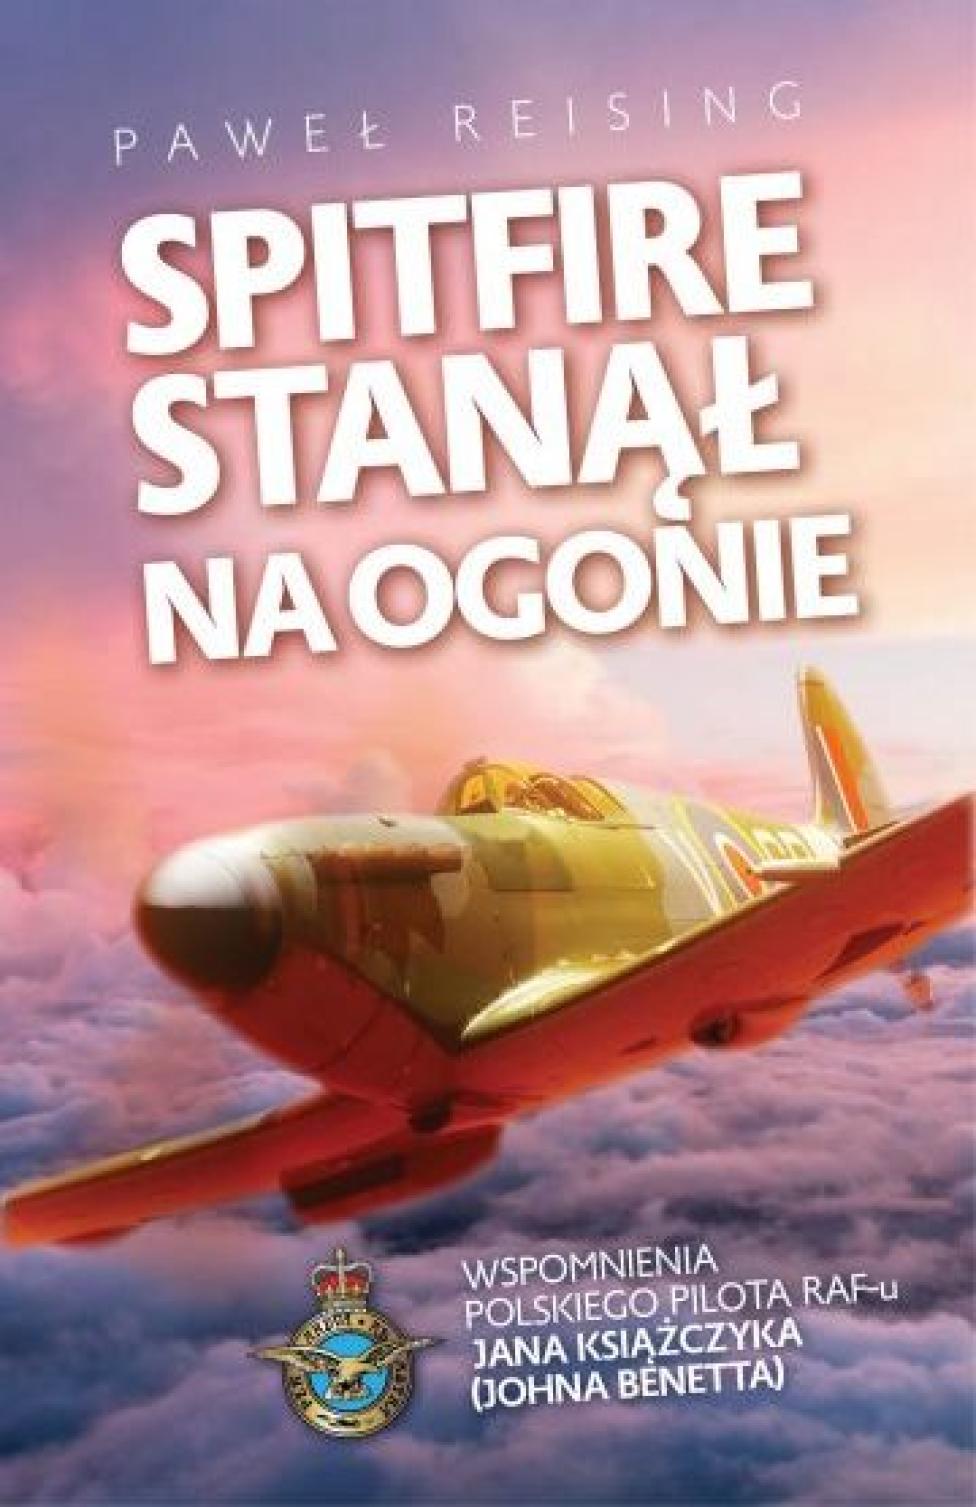 Książka "Spitfire stanął na ogonie" (fot. Wydawnictwo Fronda)